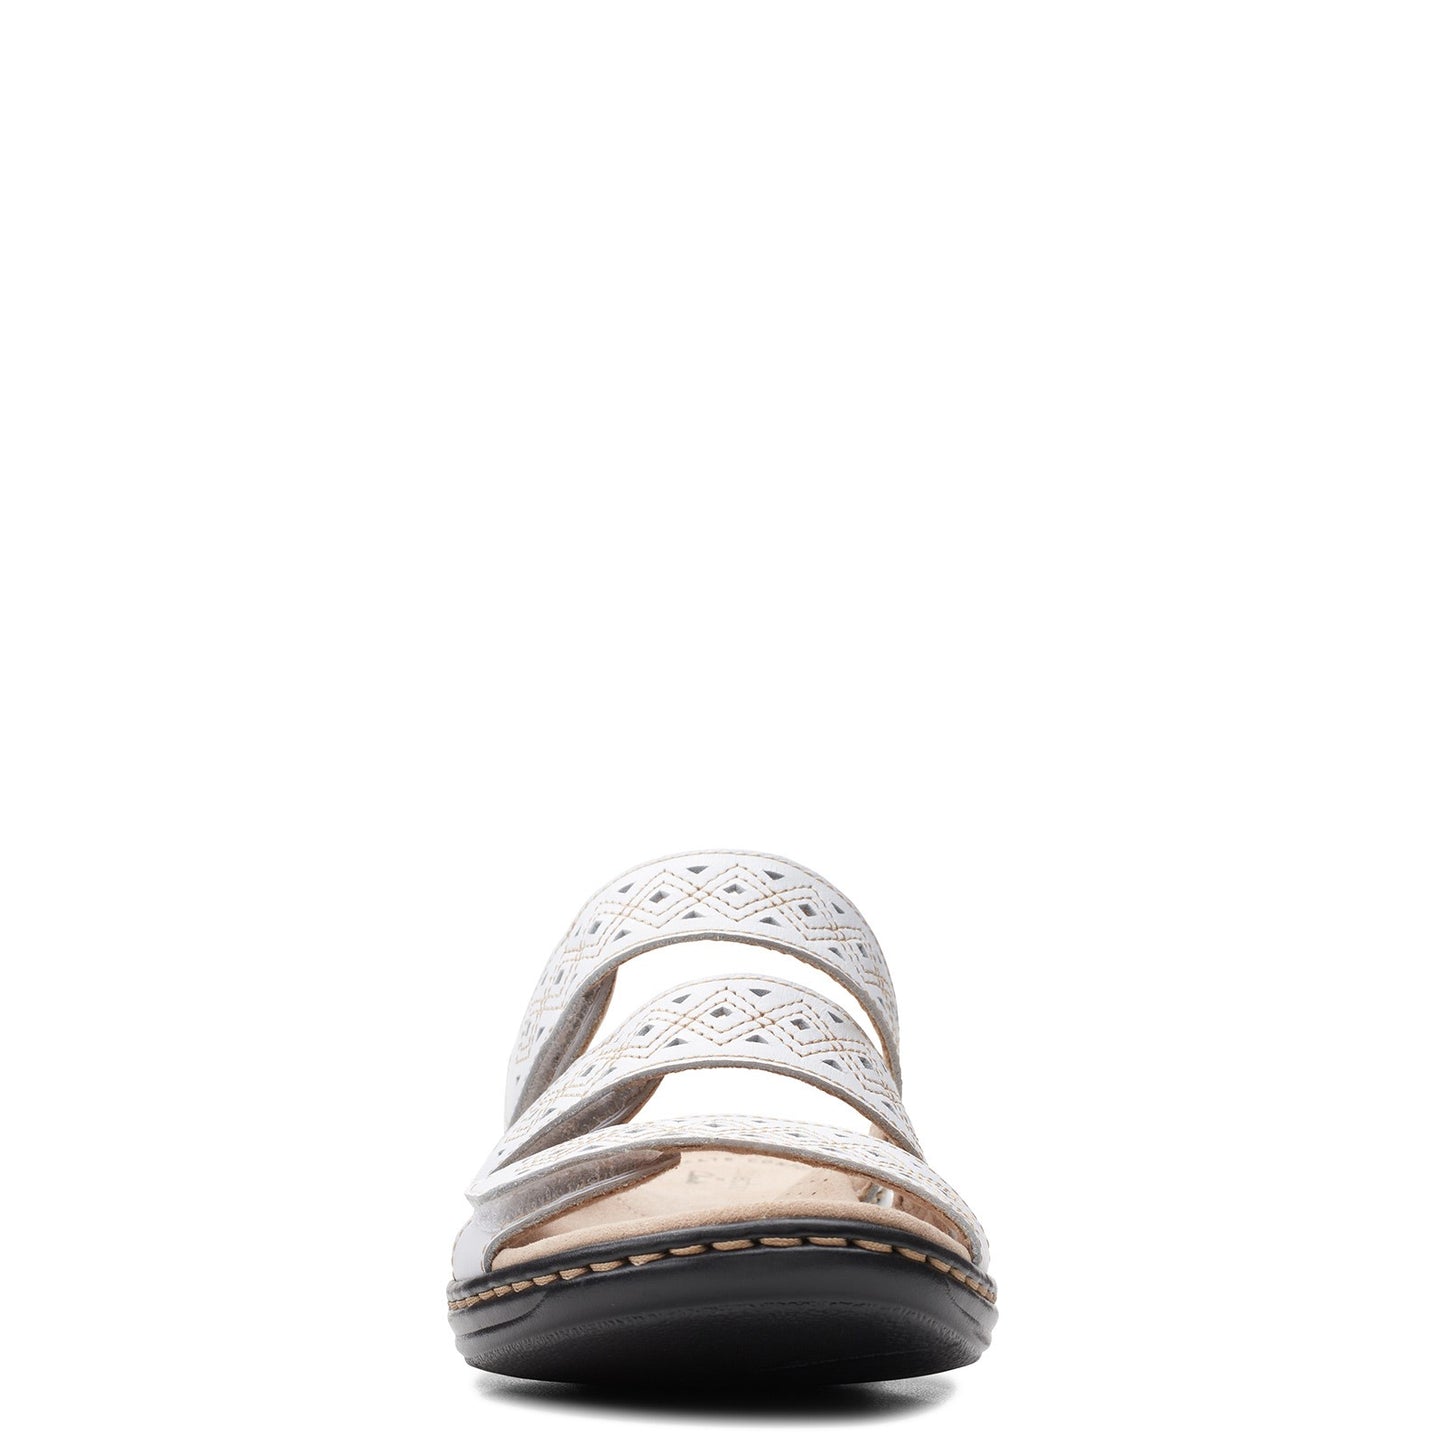 Peltz Shoes  Women's Clarks Leisa Spice Sandal WHITE 26157484